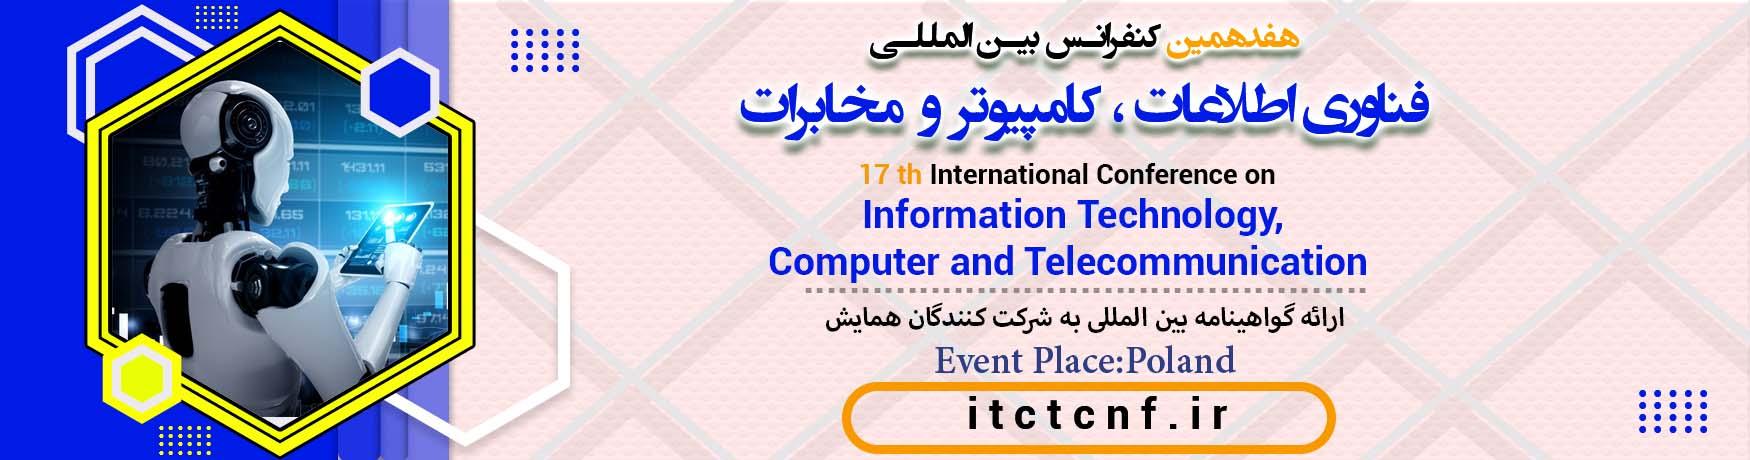 کنفرانس بین المللی فناوری اطلاعات ، کامپیوتر و مخابرات